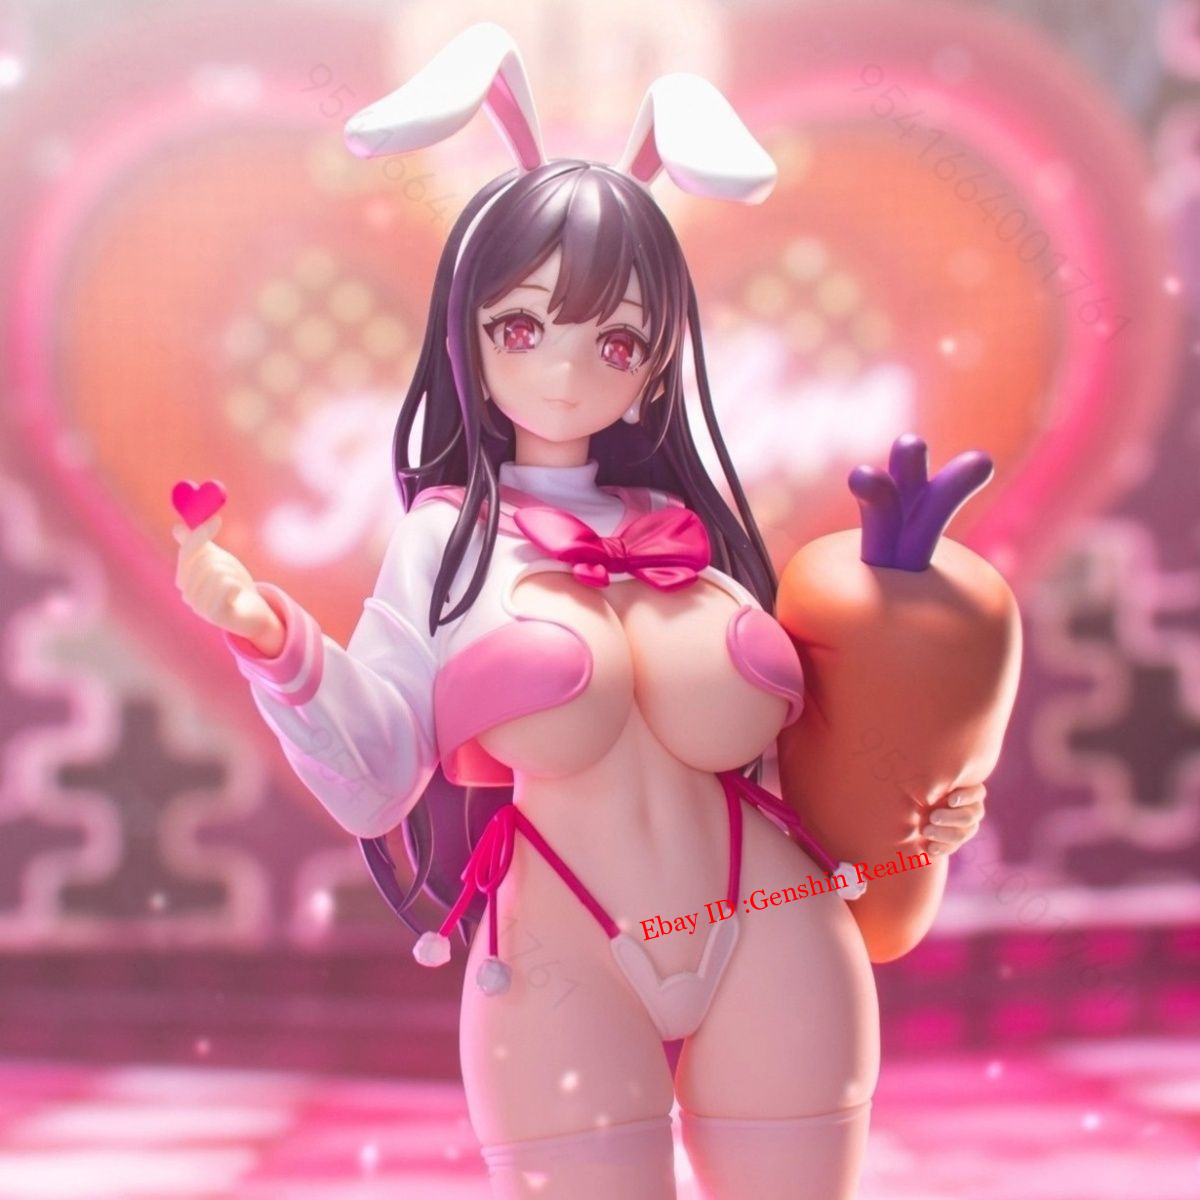 Anime Girl Carrot Bunny Girl Unosakura 1/6 Pvc Figure Model Collection Decor